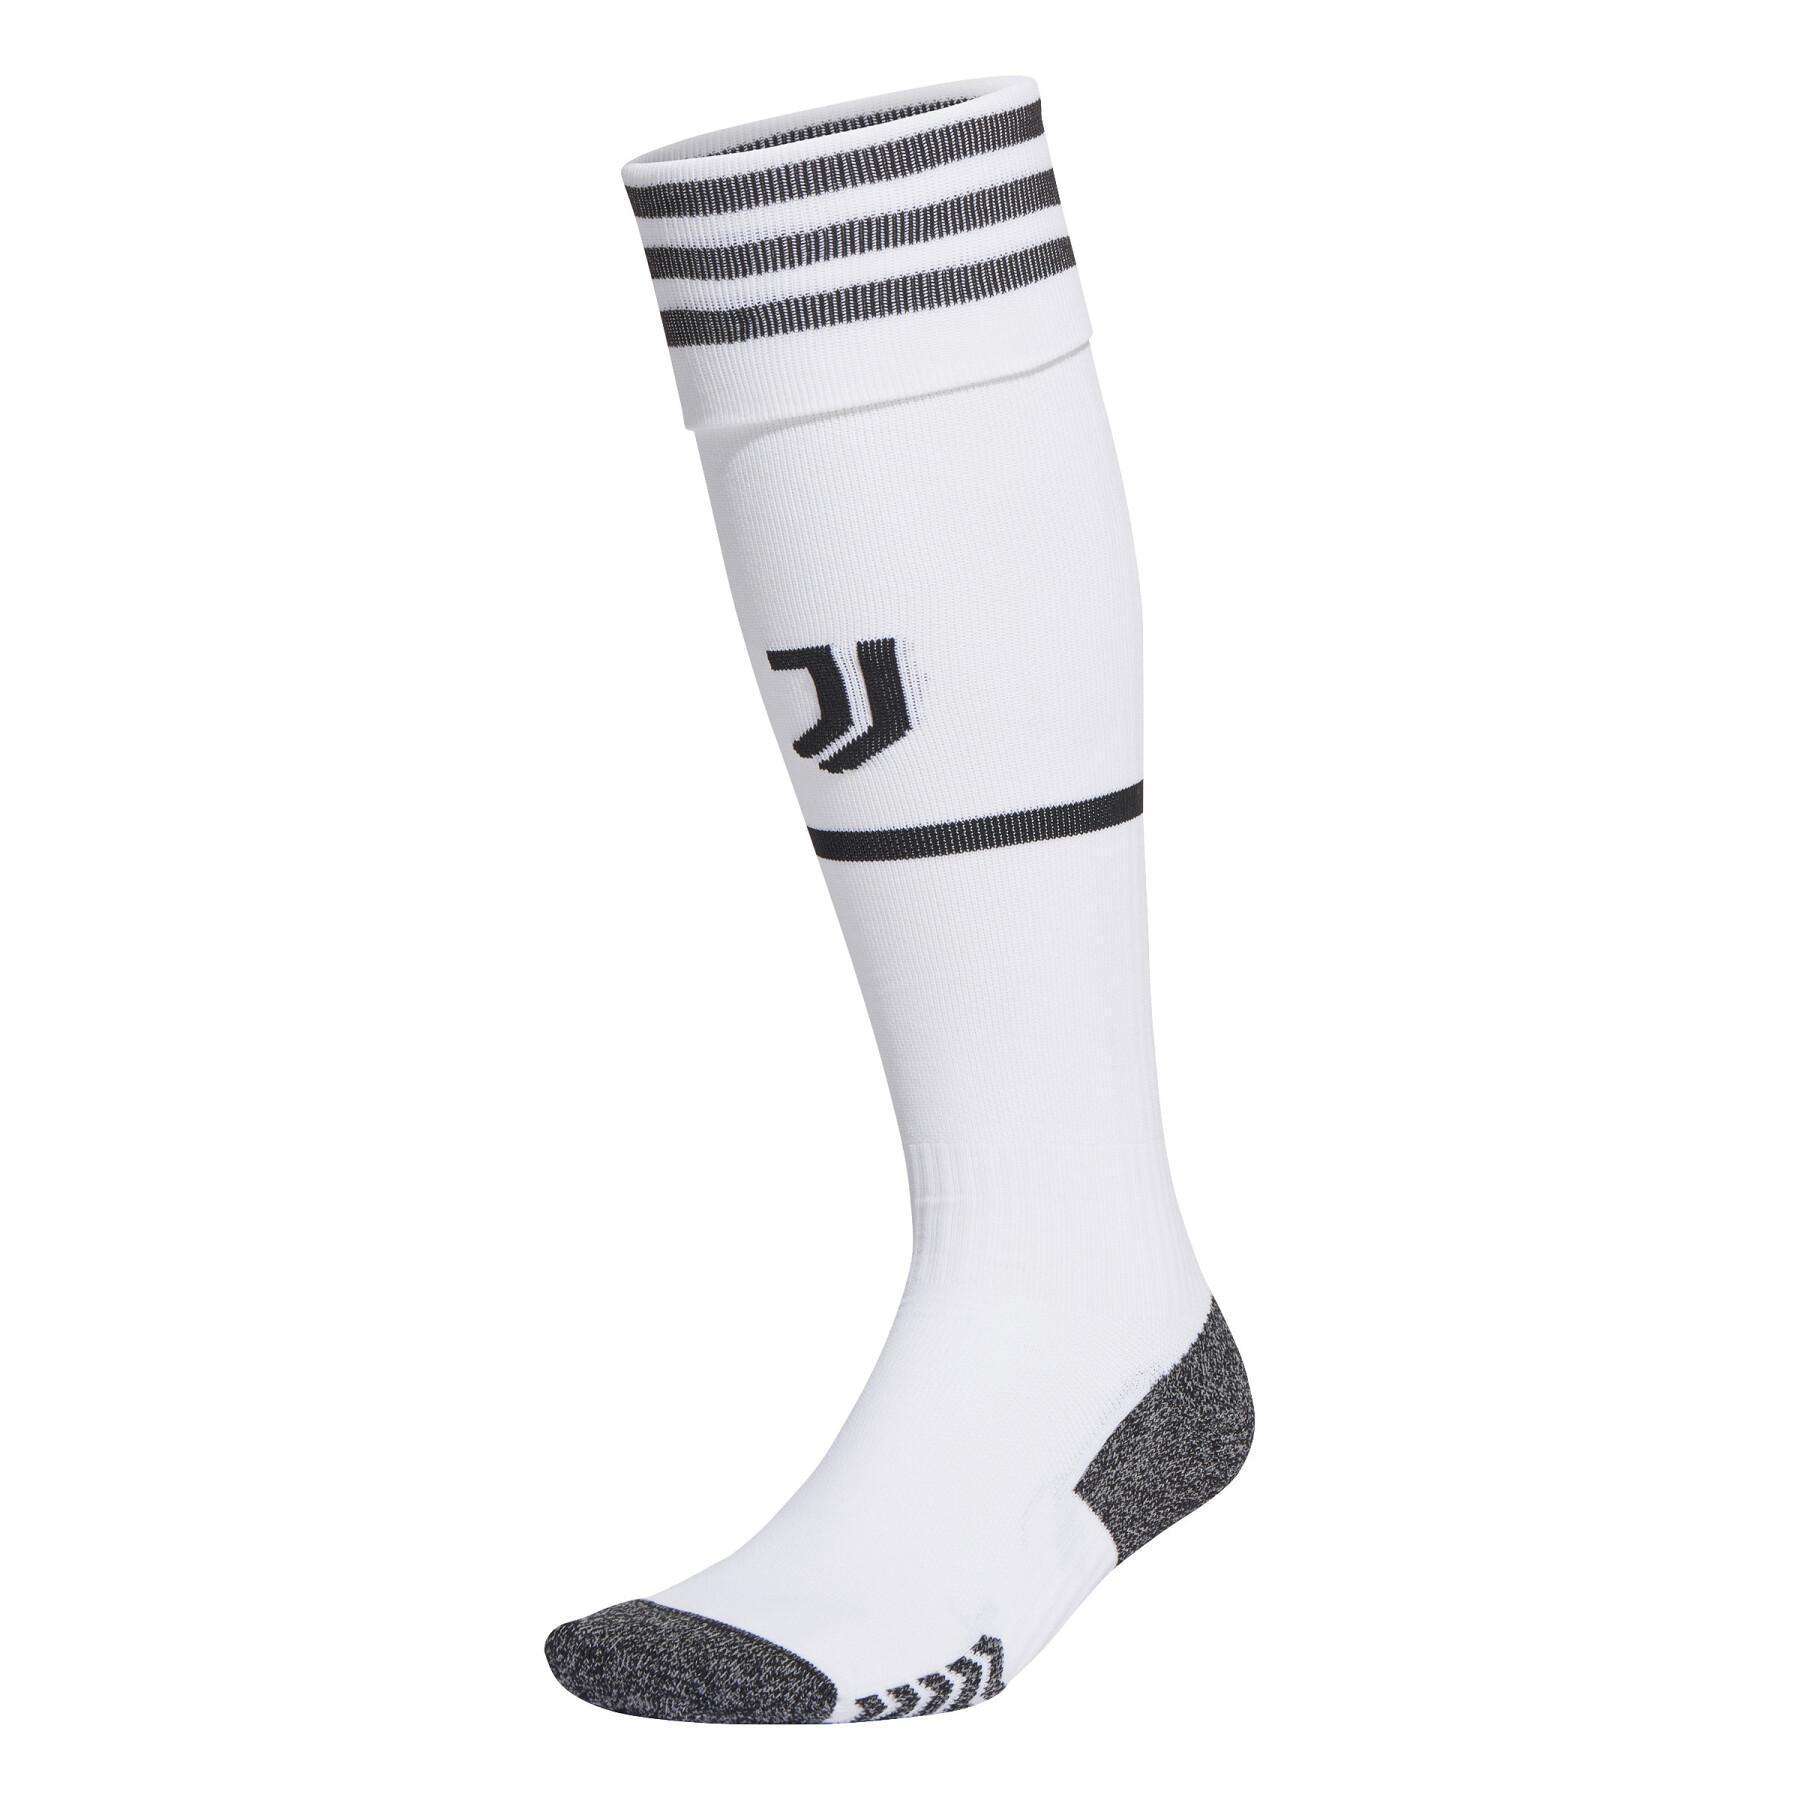 Home socks Juventus 2021/22